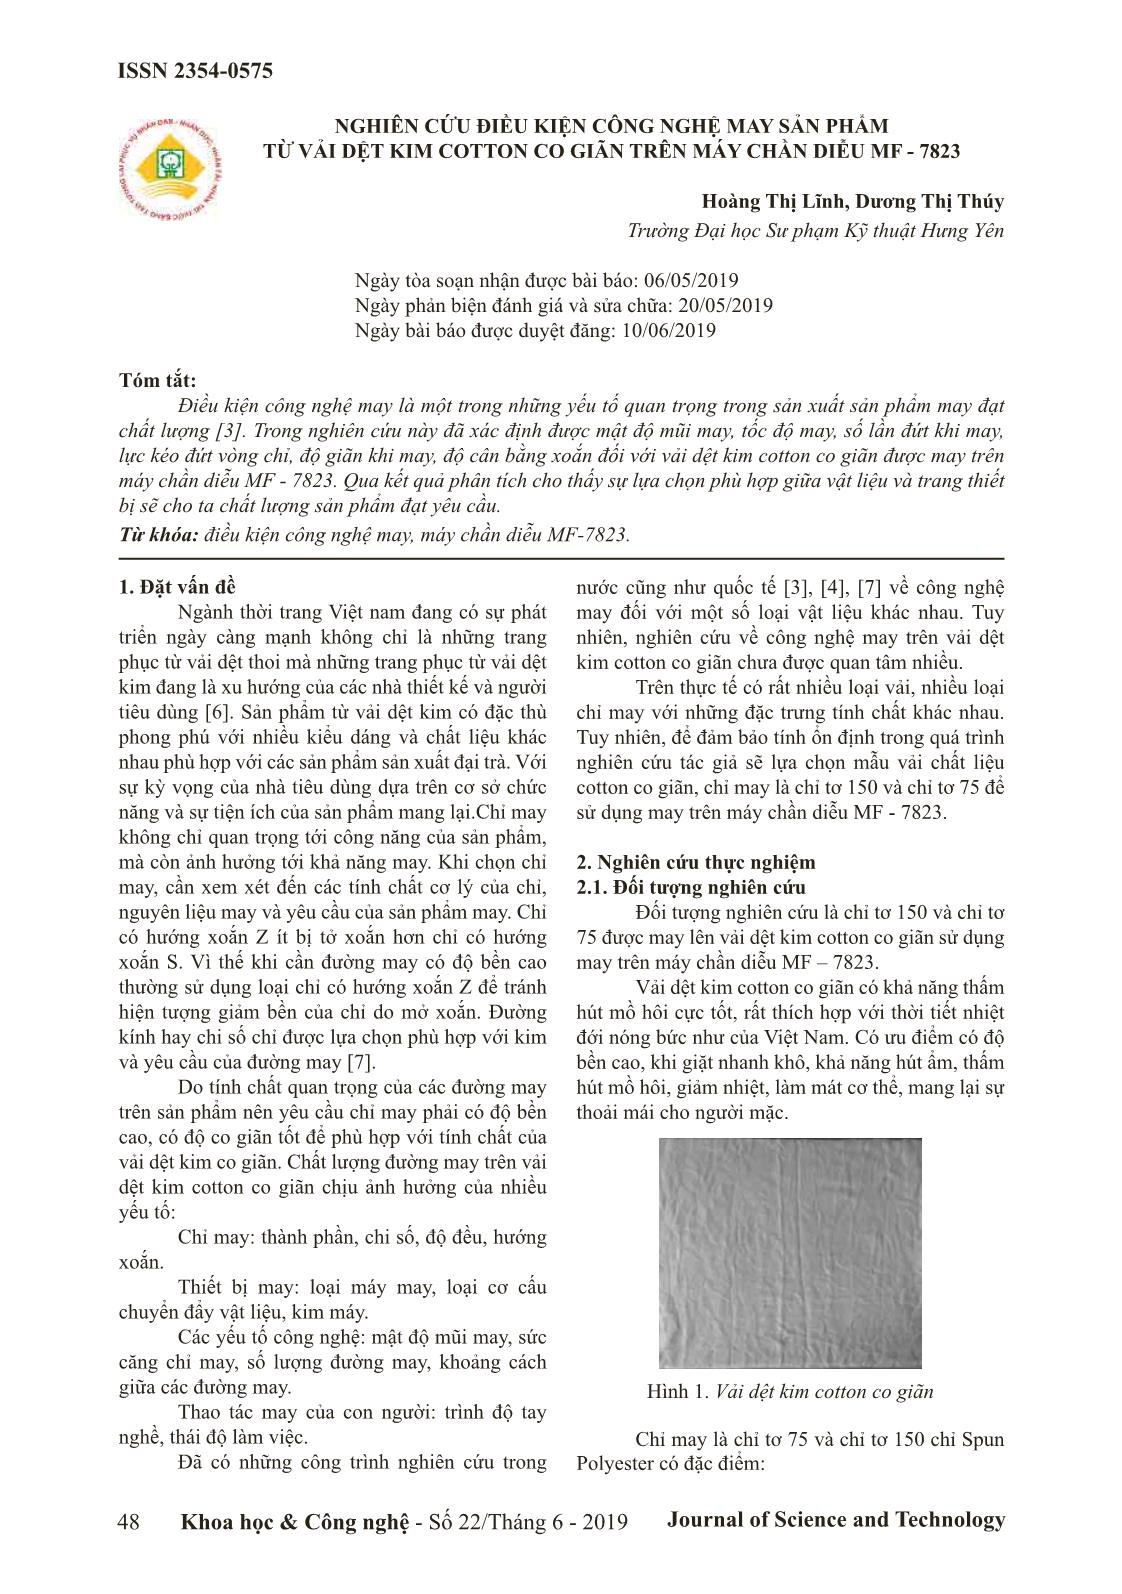 Nghiên cứu điều kiện công nghệ may sản phẩm từ vải dệt kim cotton co giãn trên máy chần diễu MF - 7823 trang 1